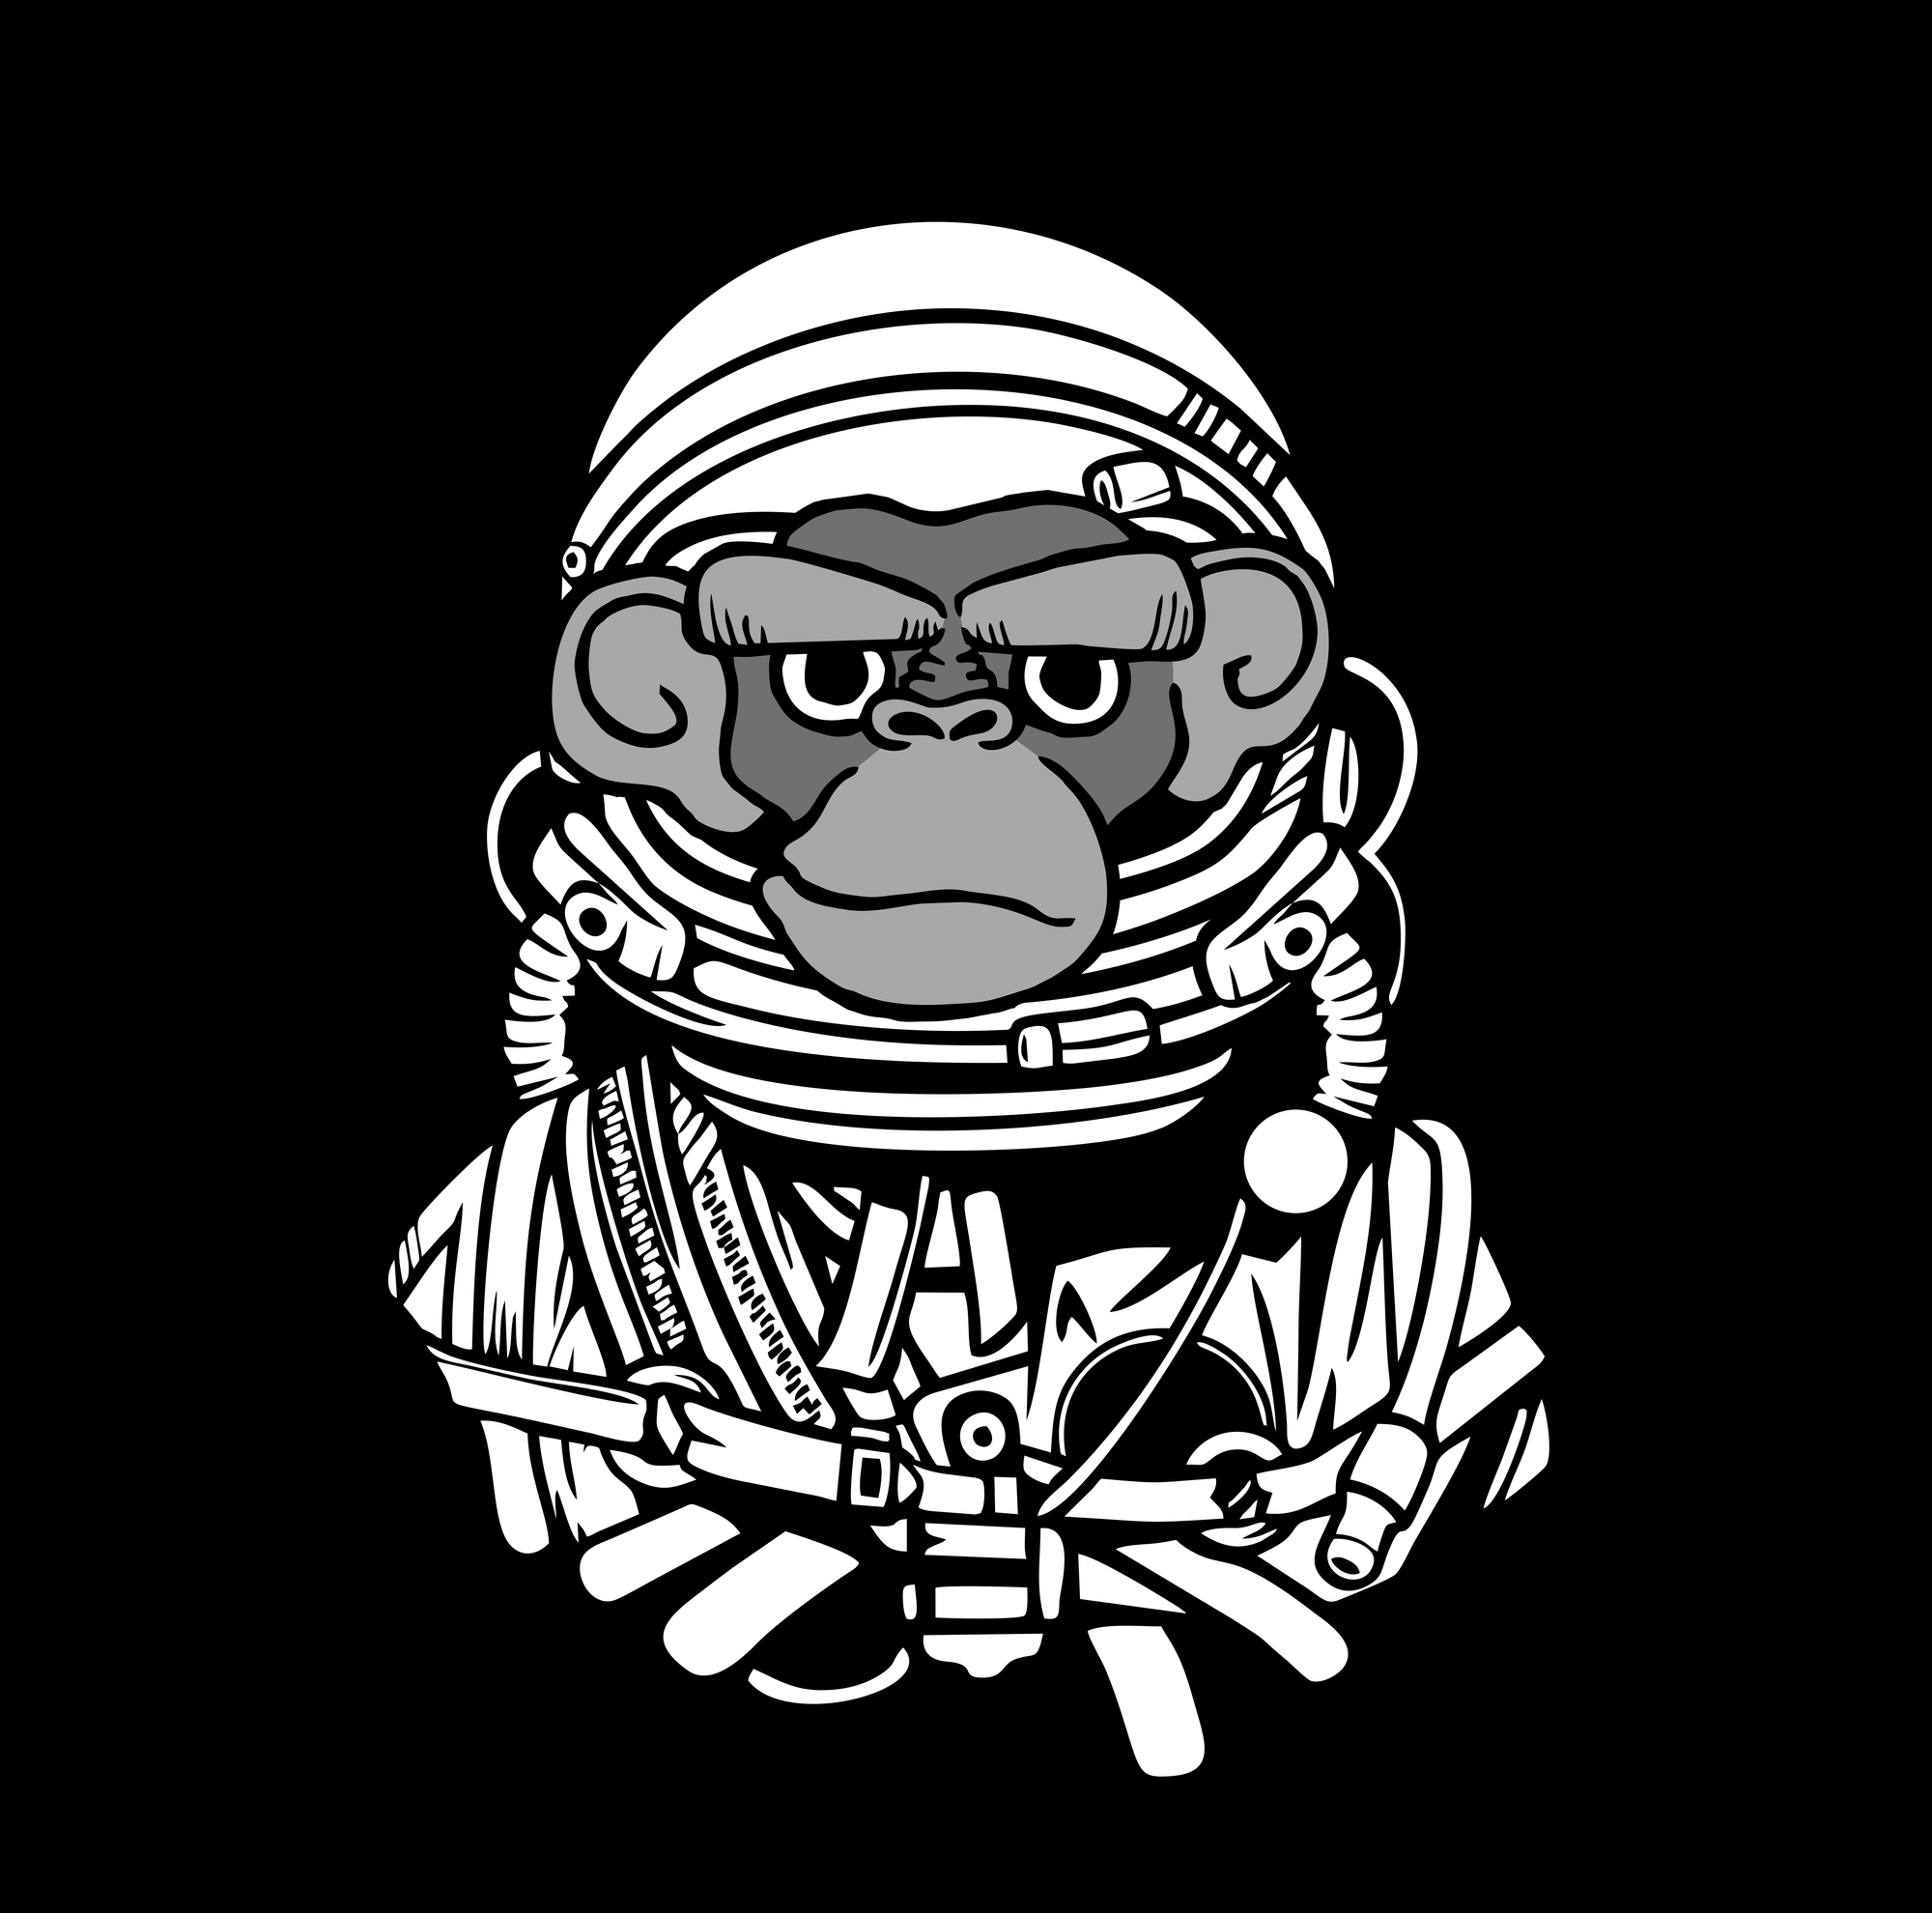 Astro Chimp